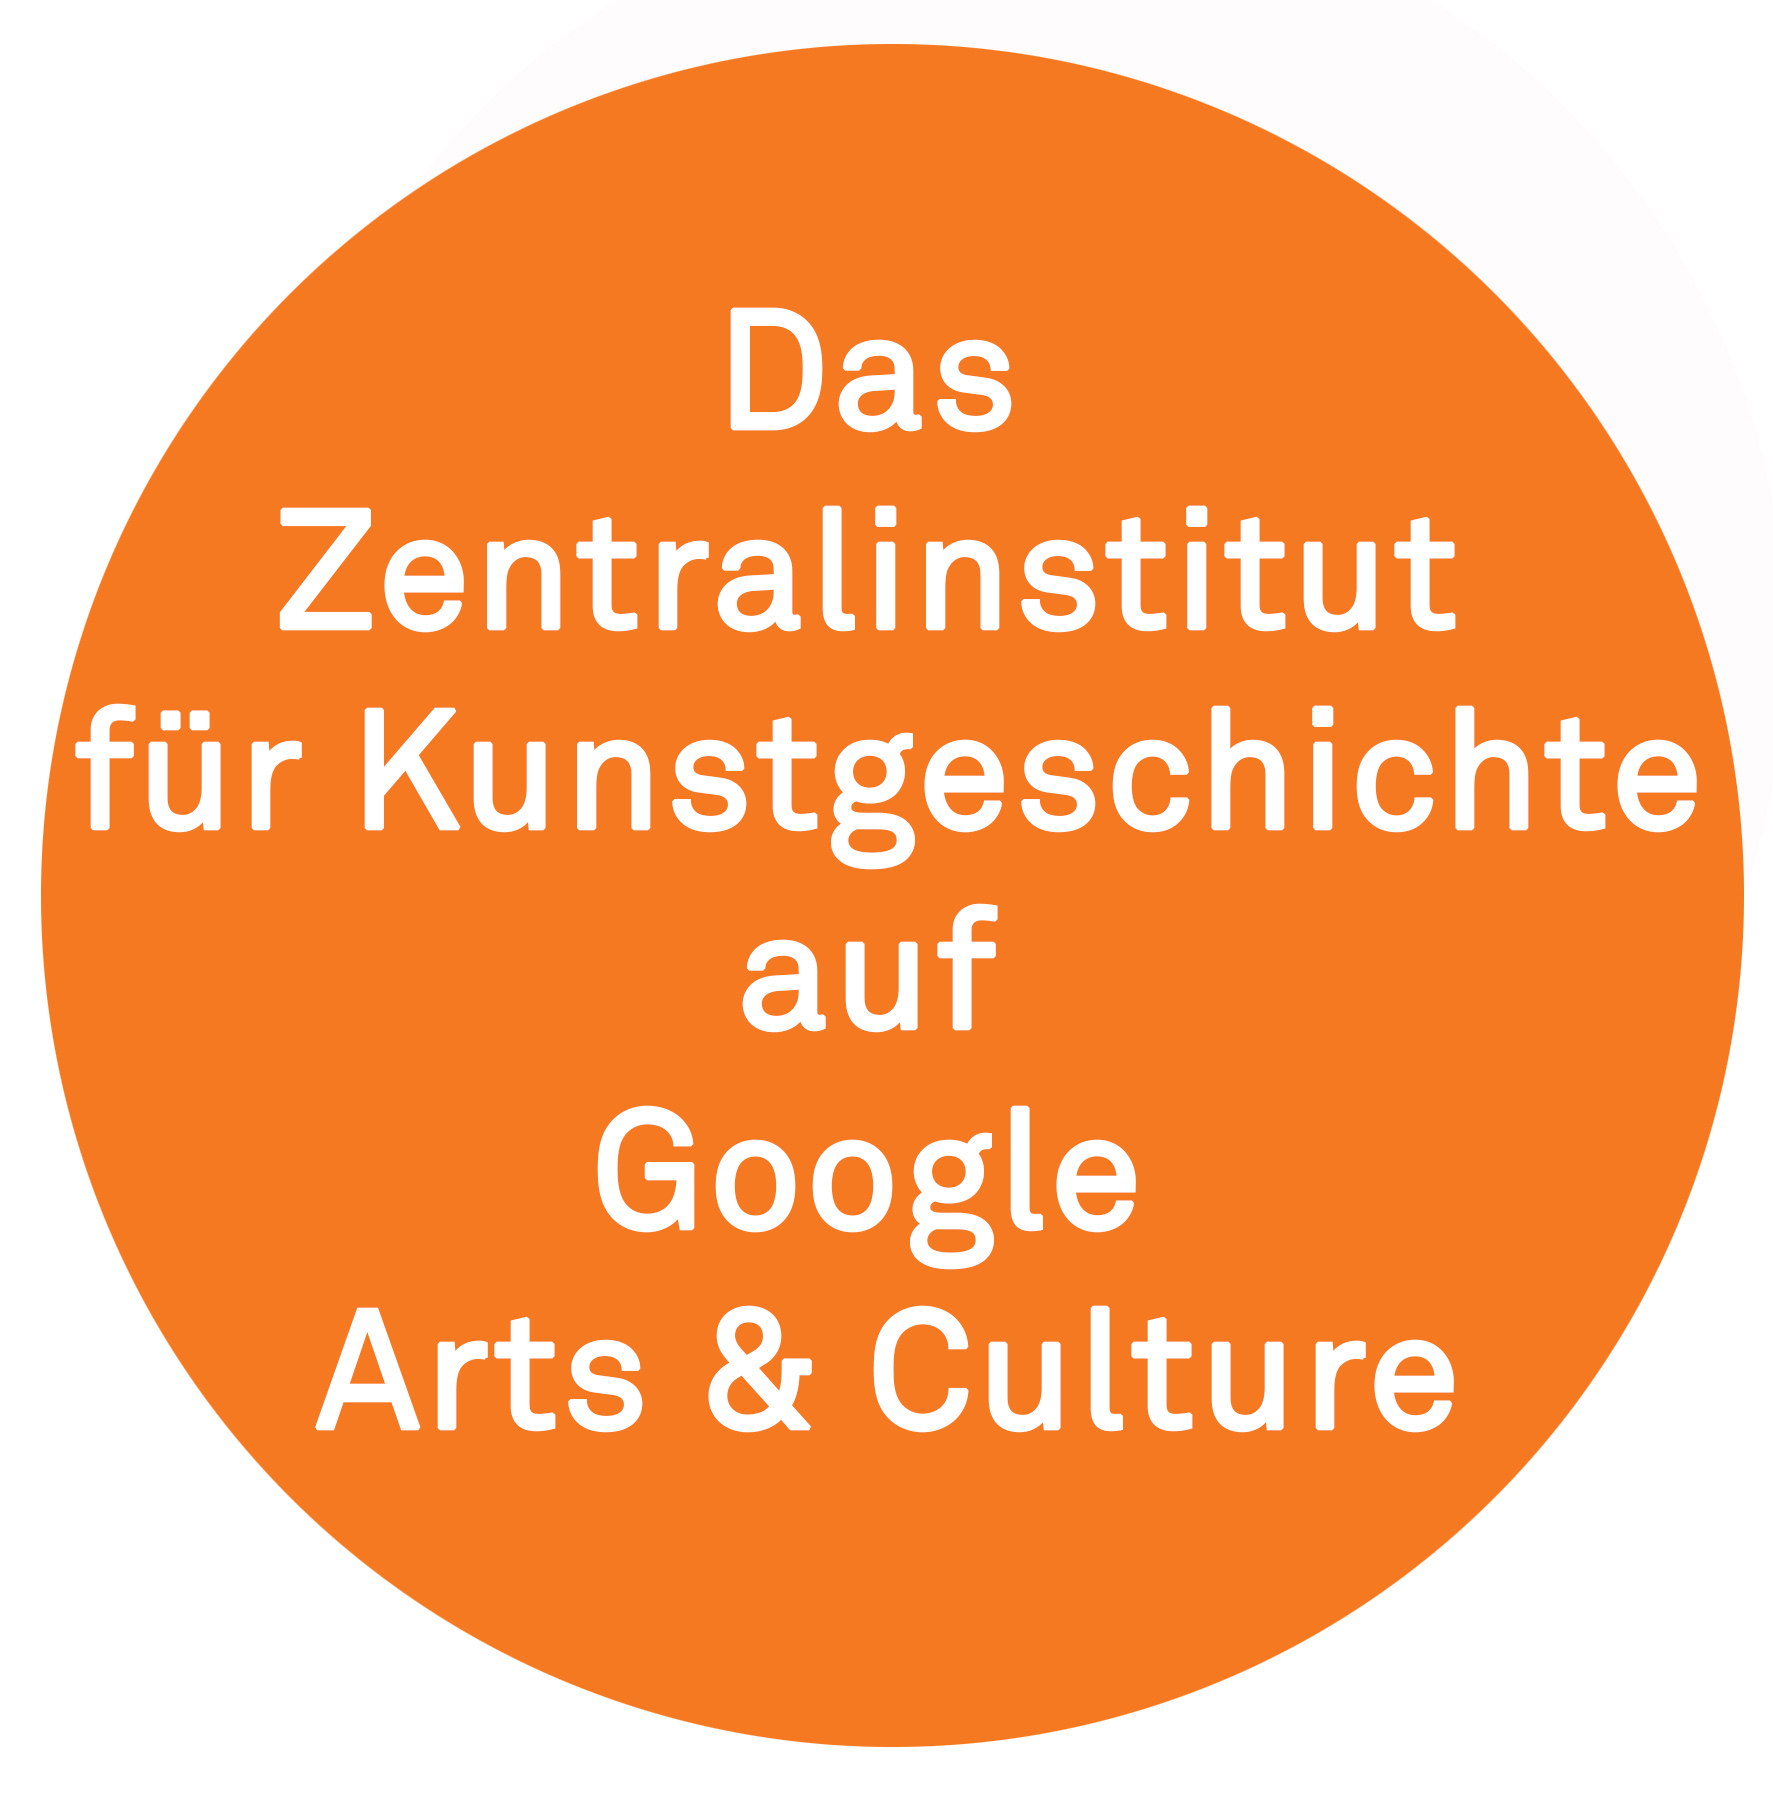 Das Zentralinstitut für Kunstgeschichte auf Google Arts & Culture